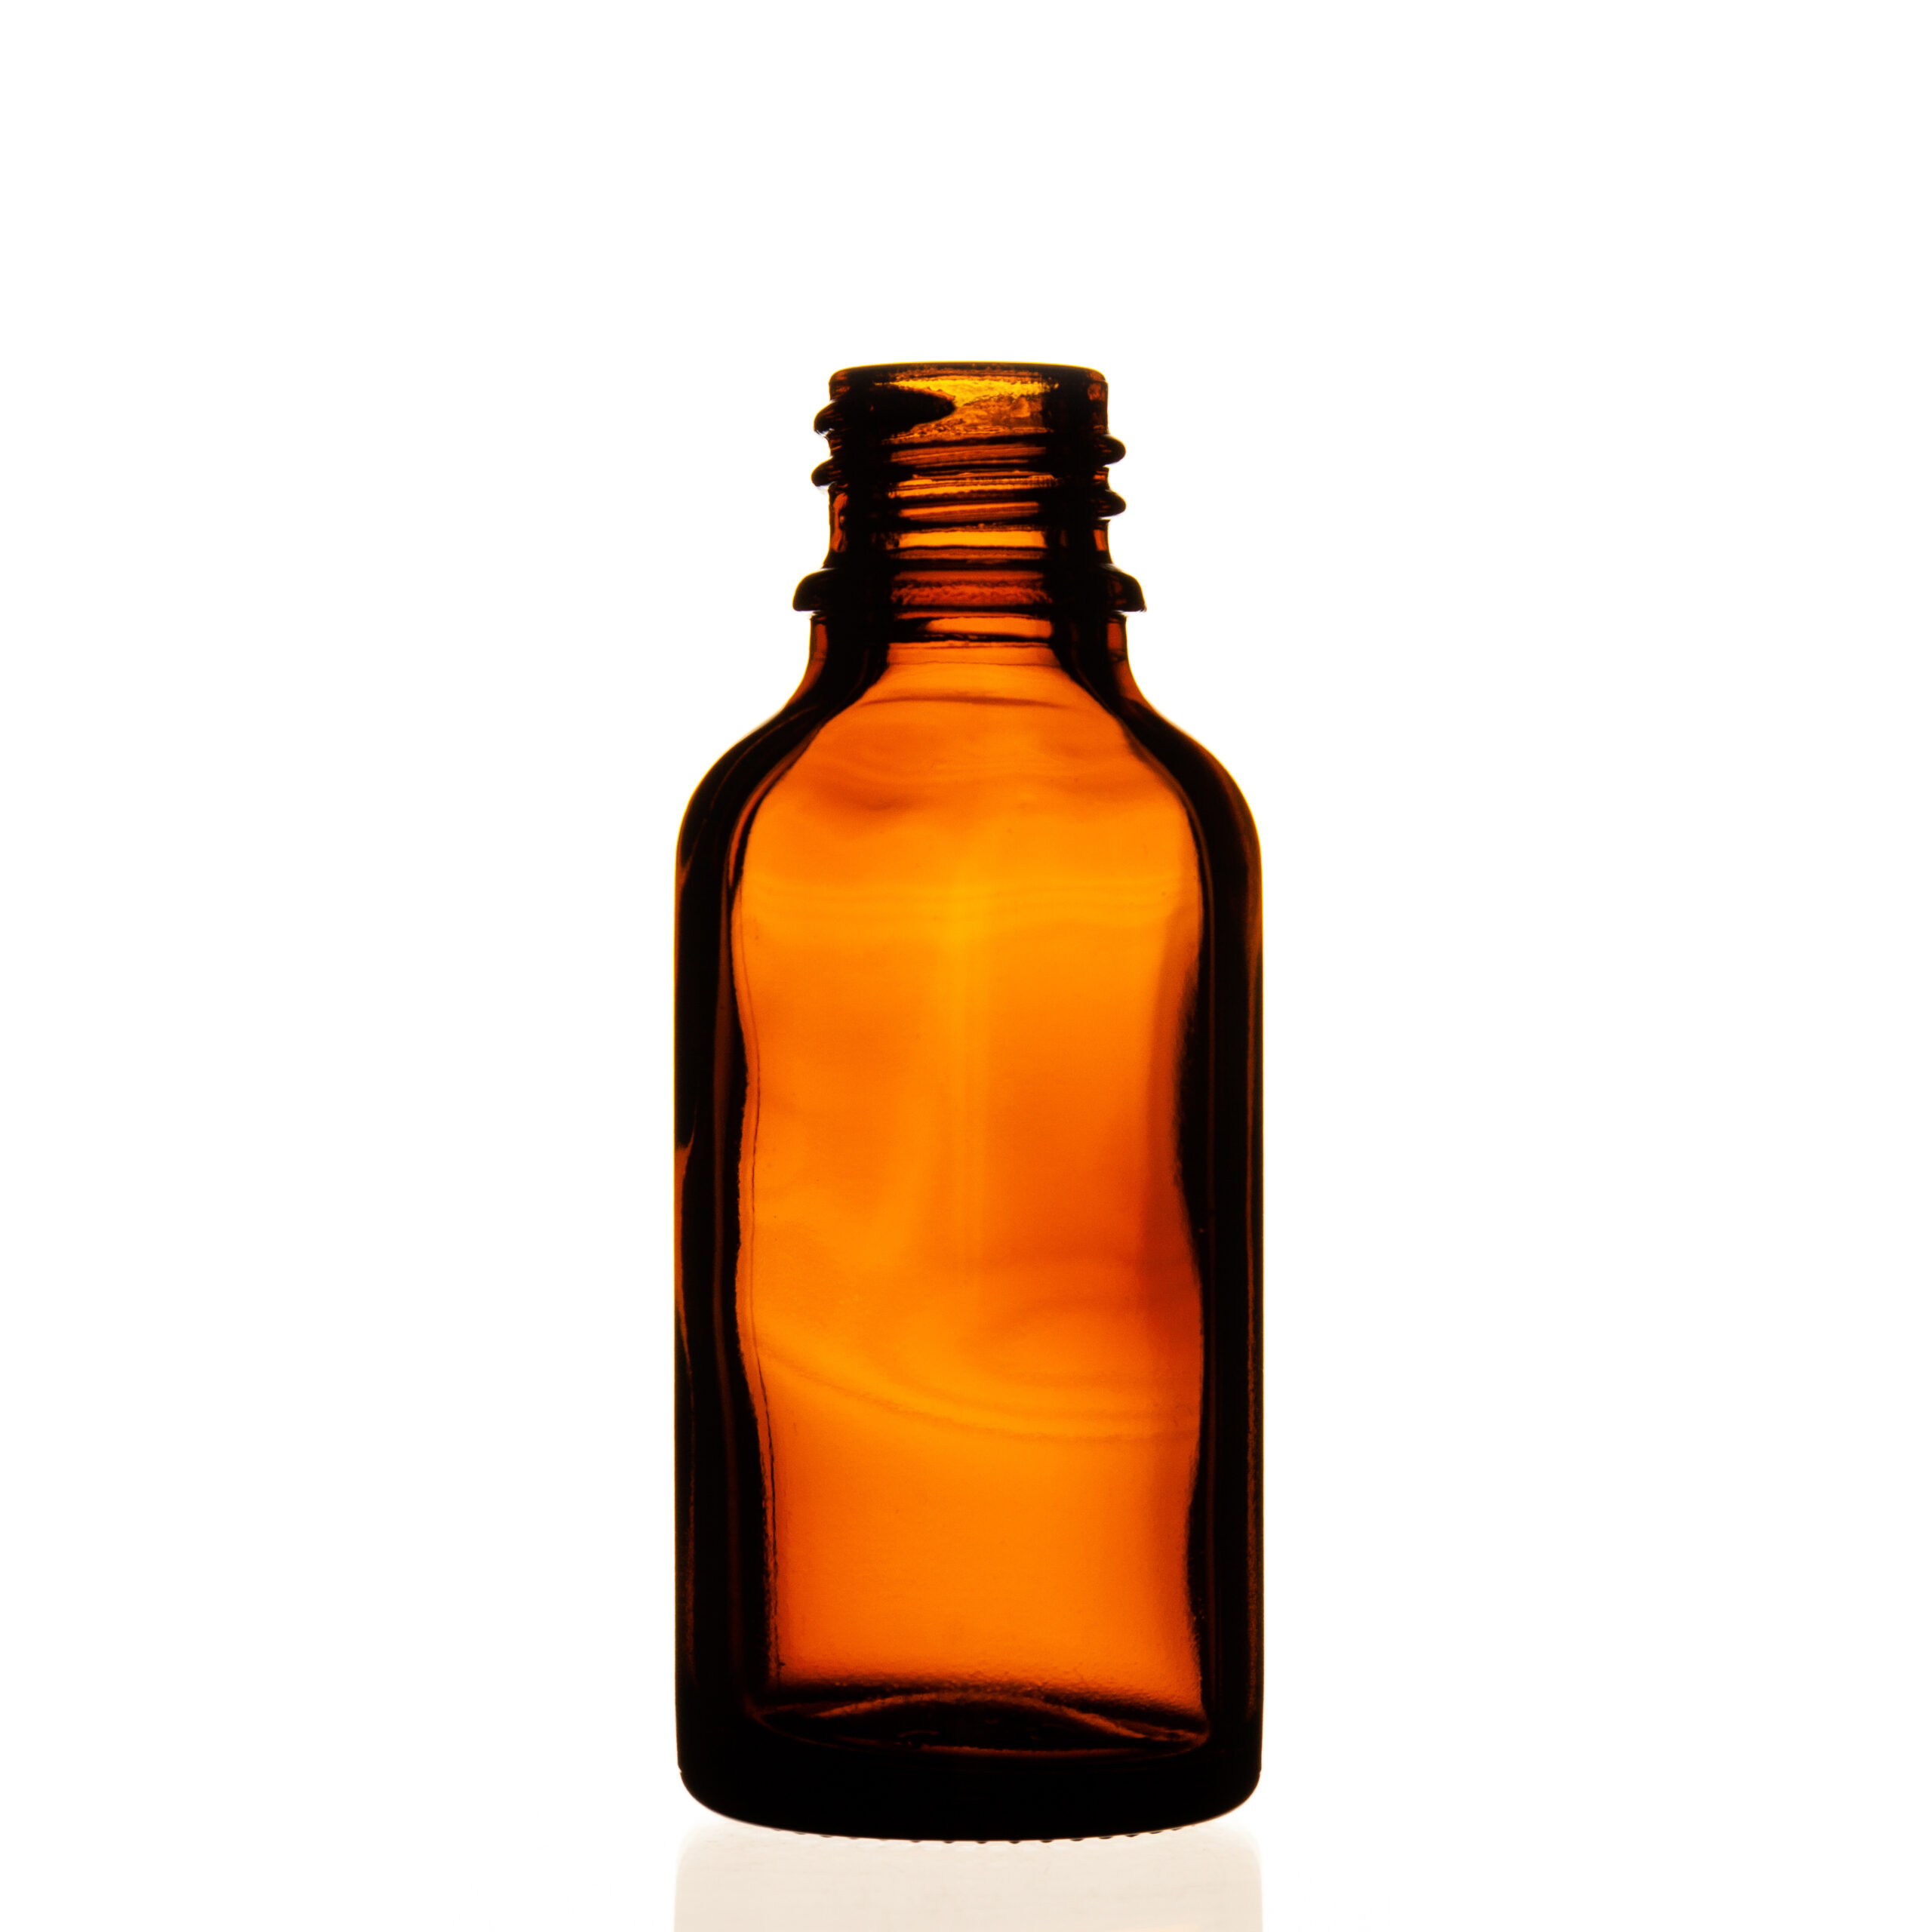 Type III DIN 18 topaz glass bottle 50ml